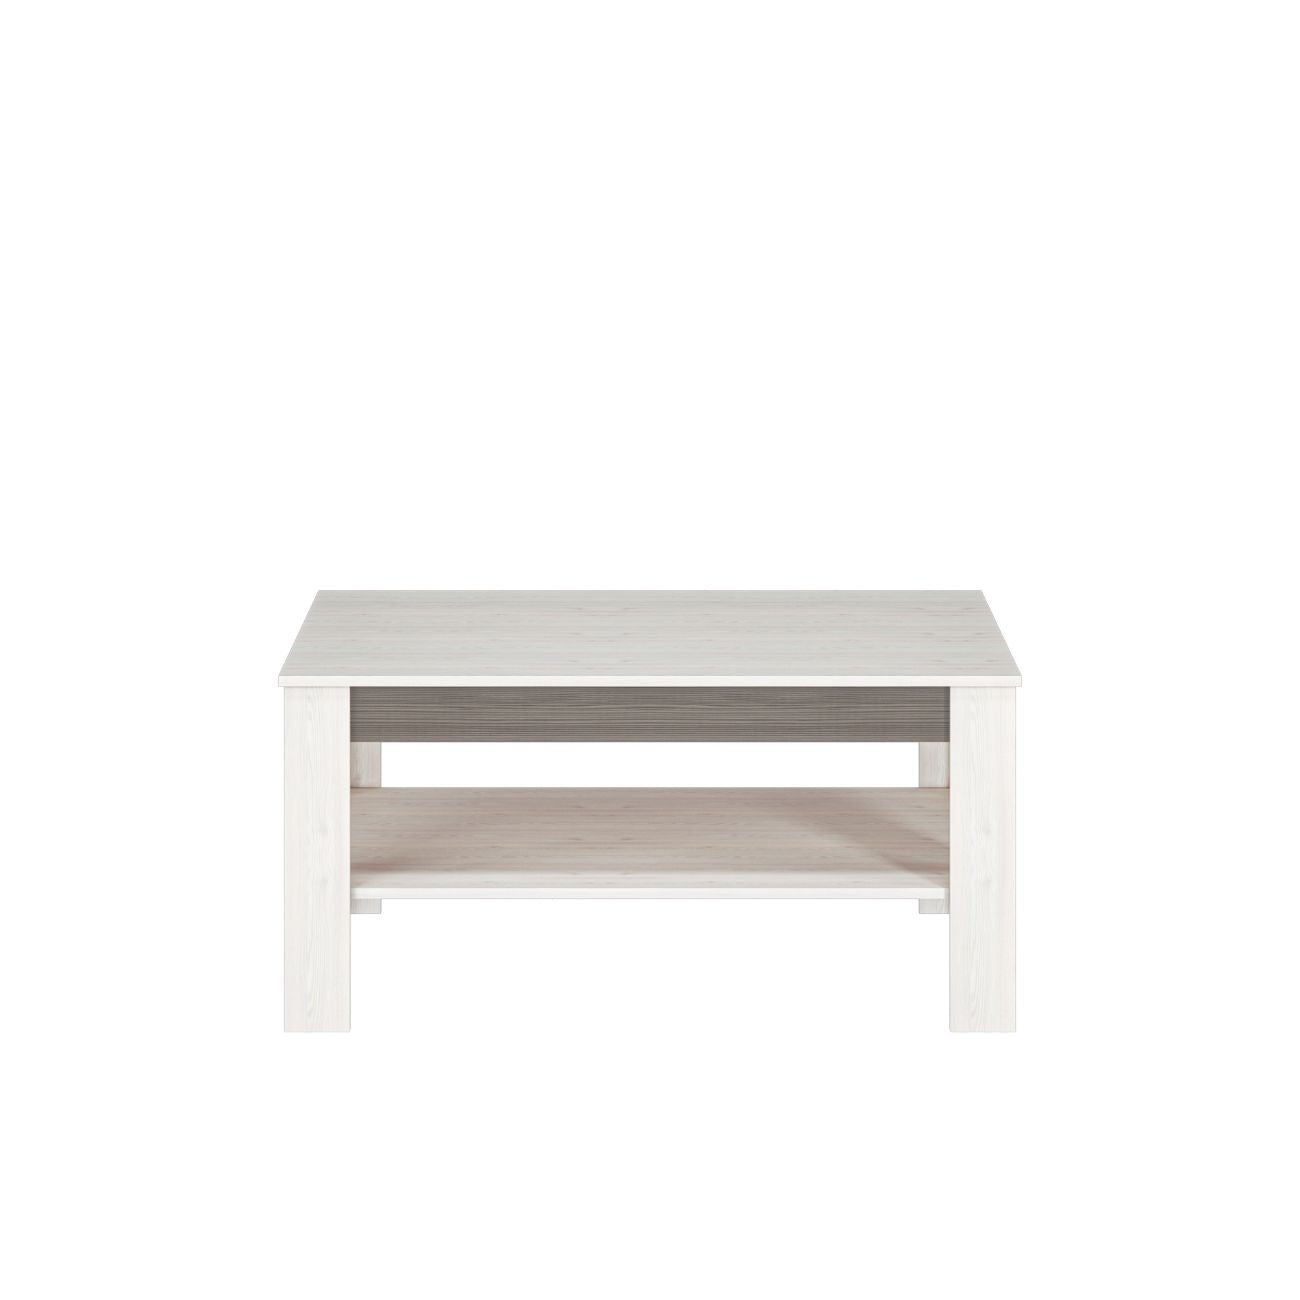 Zdjęcie przedstawiające nowoczesną ławę do salonu z półką oraz wstawką MDF w kolorze New Grey. Nowoczesna i modna ława do salonu Blanka dostępna w promocyjnej cenie w dmsm.pl